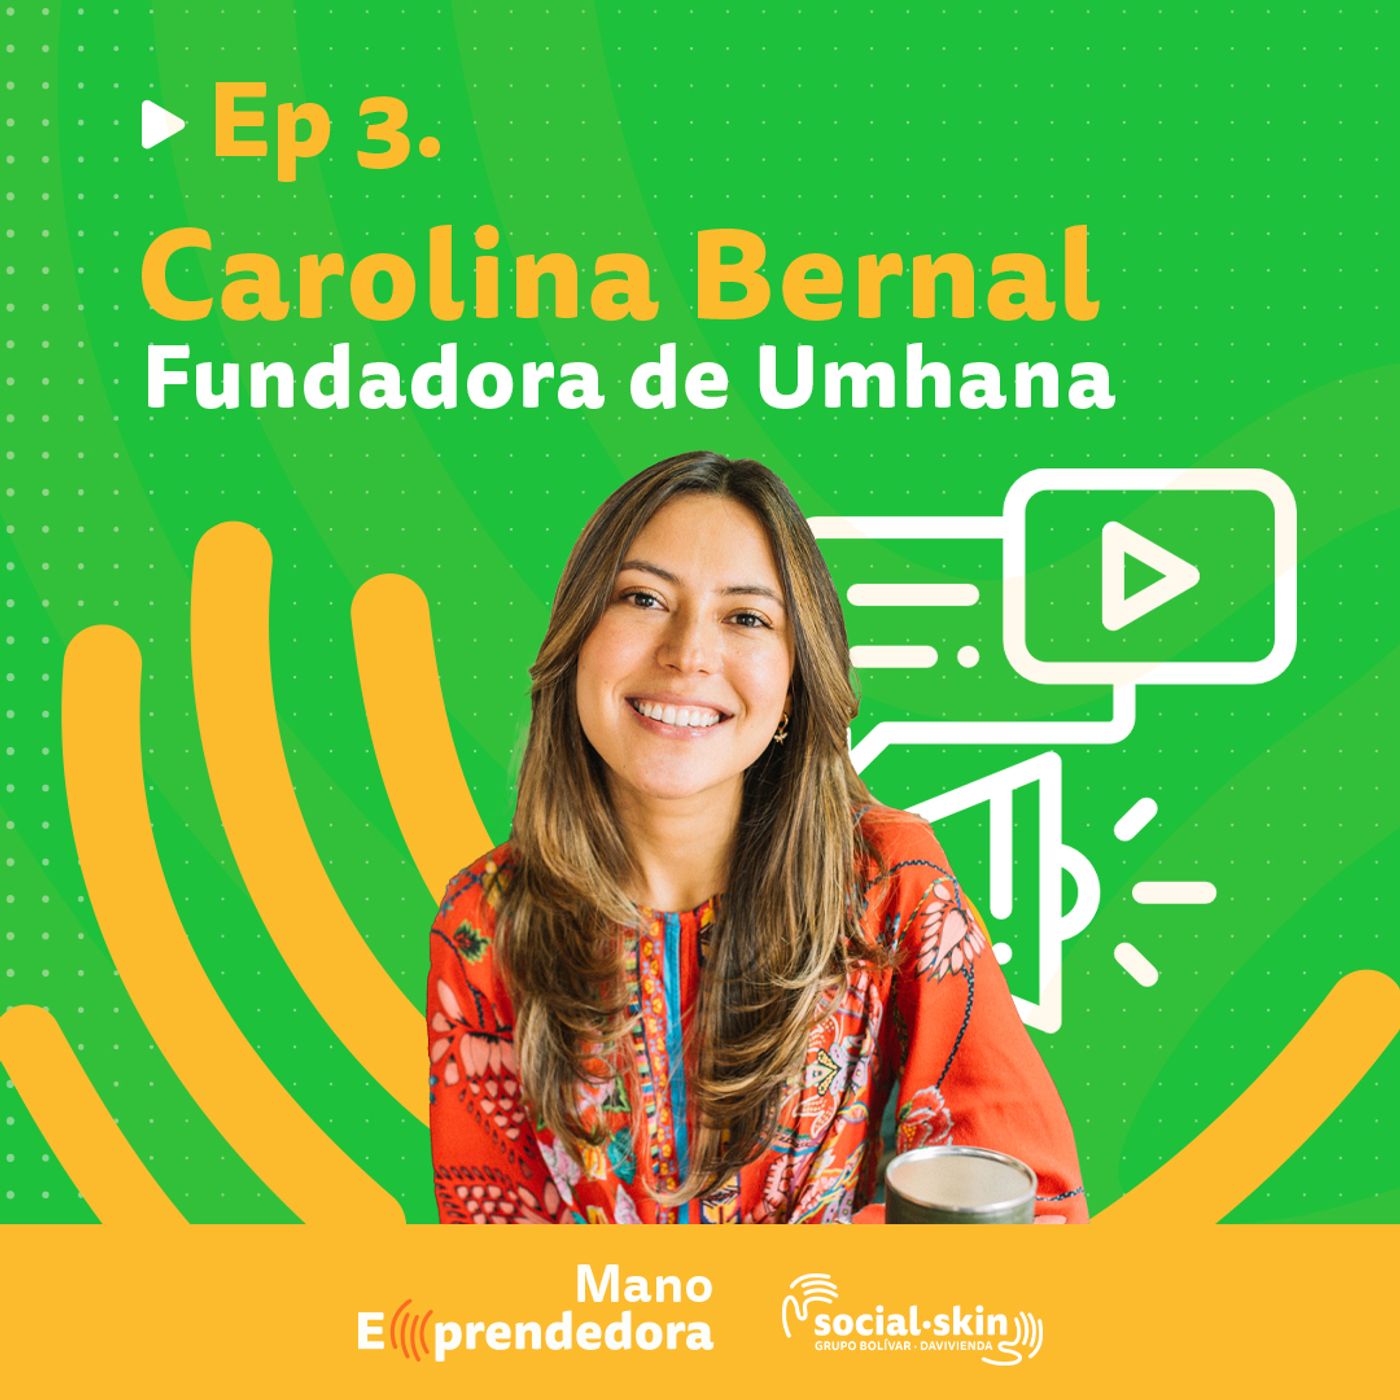 Ep 3. Canales Digitales: El Secreto Para Los Nuevos Emprendimientos - Carolina Bernal, Fundadora de Umhana